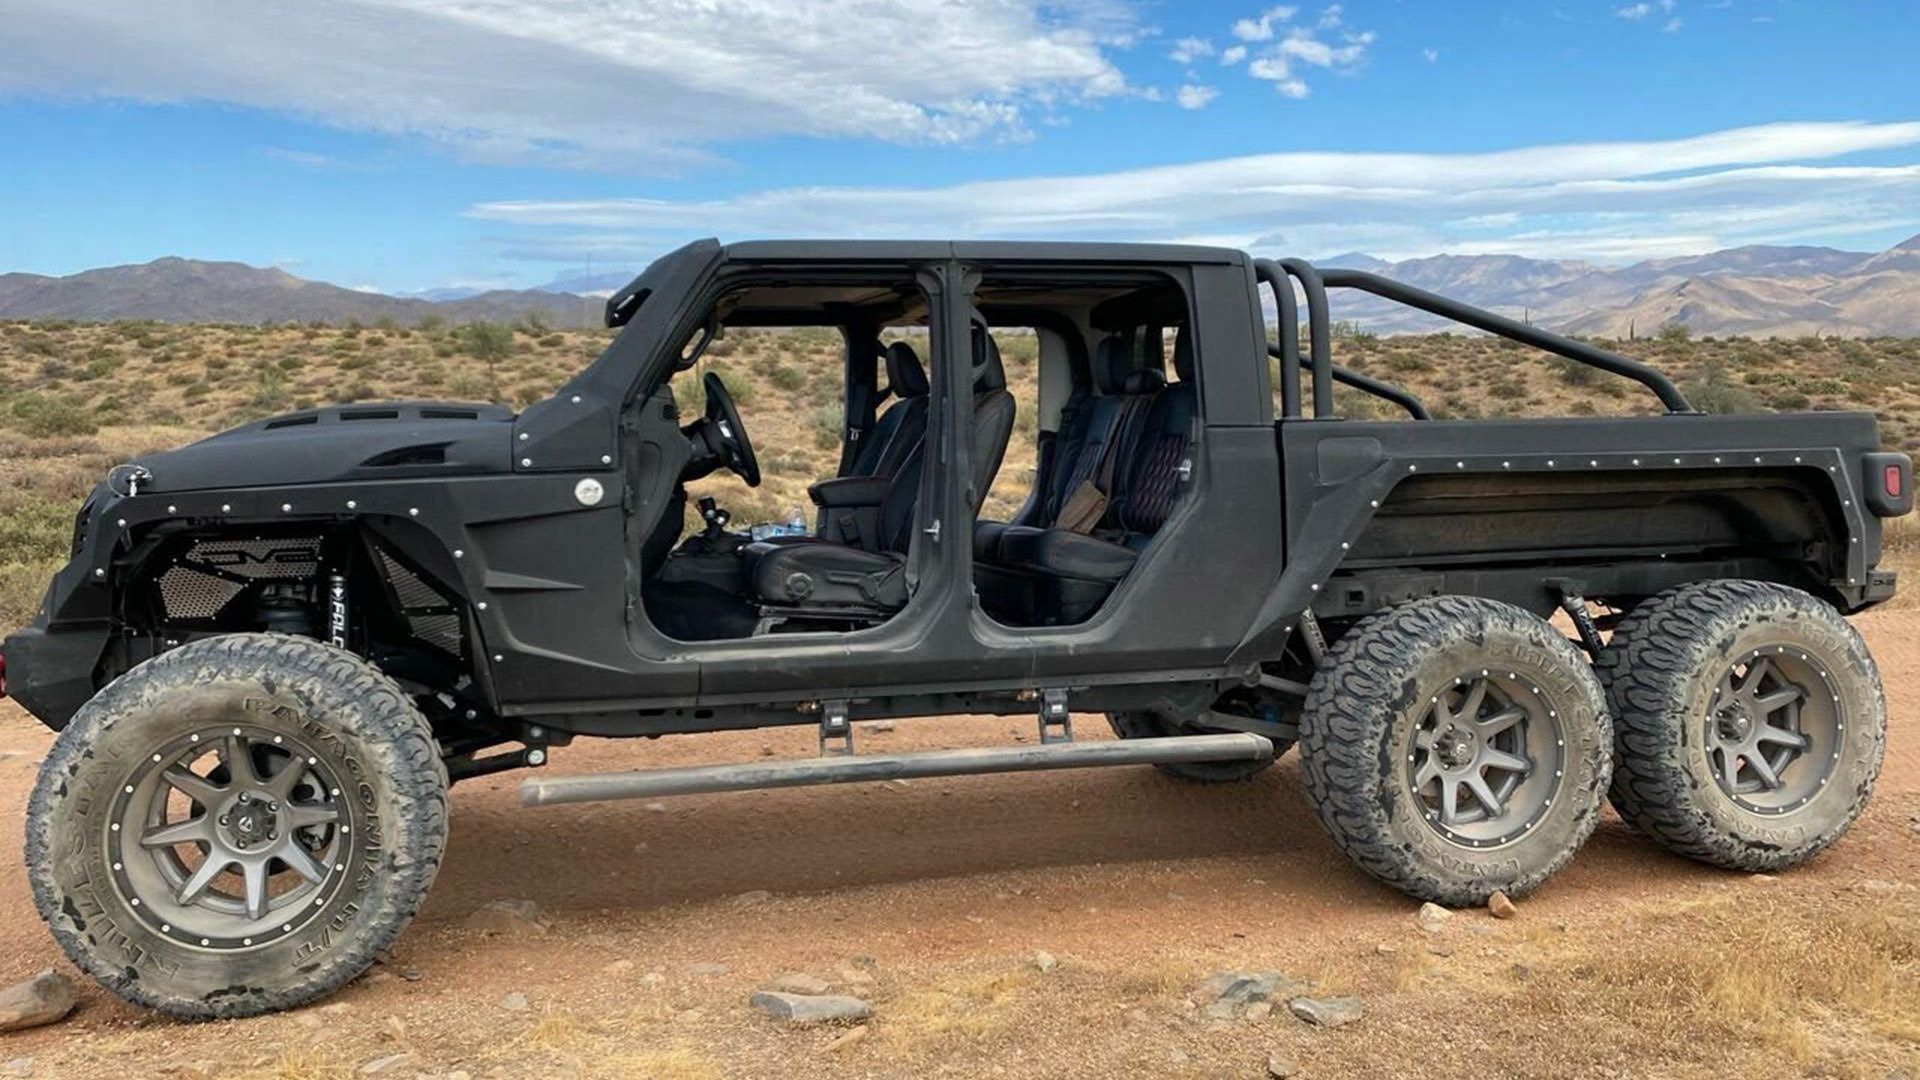 نمای جانبی شاسی بلند جیپ گلادیاتور / Jeep Gladiator مجهز به 6 چرخ